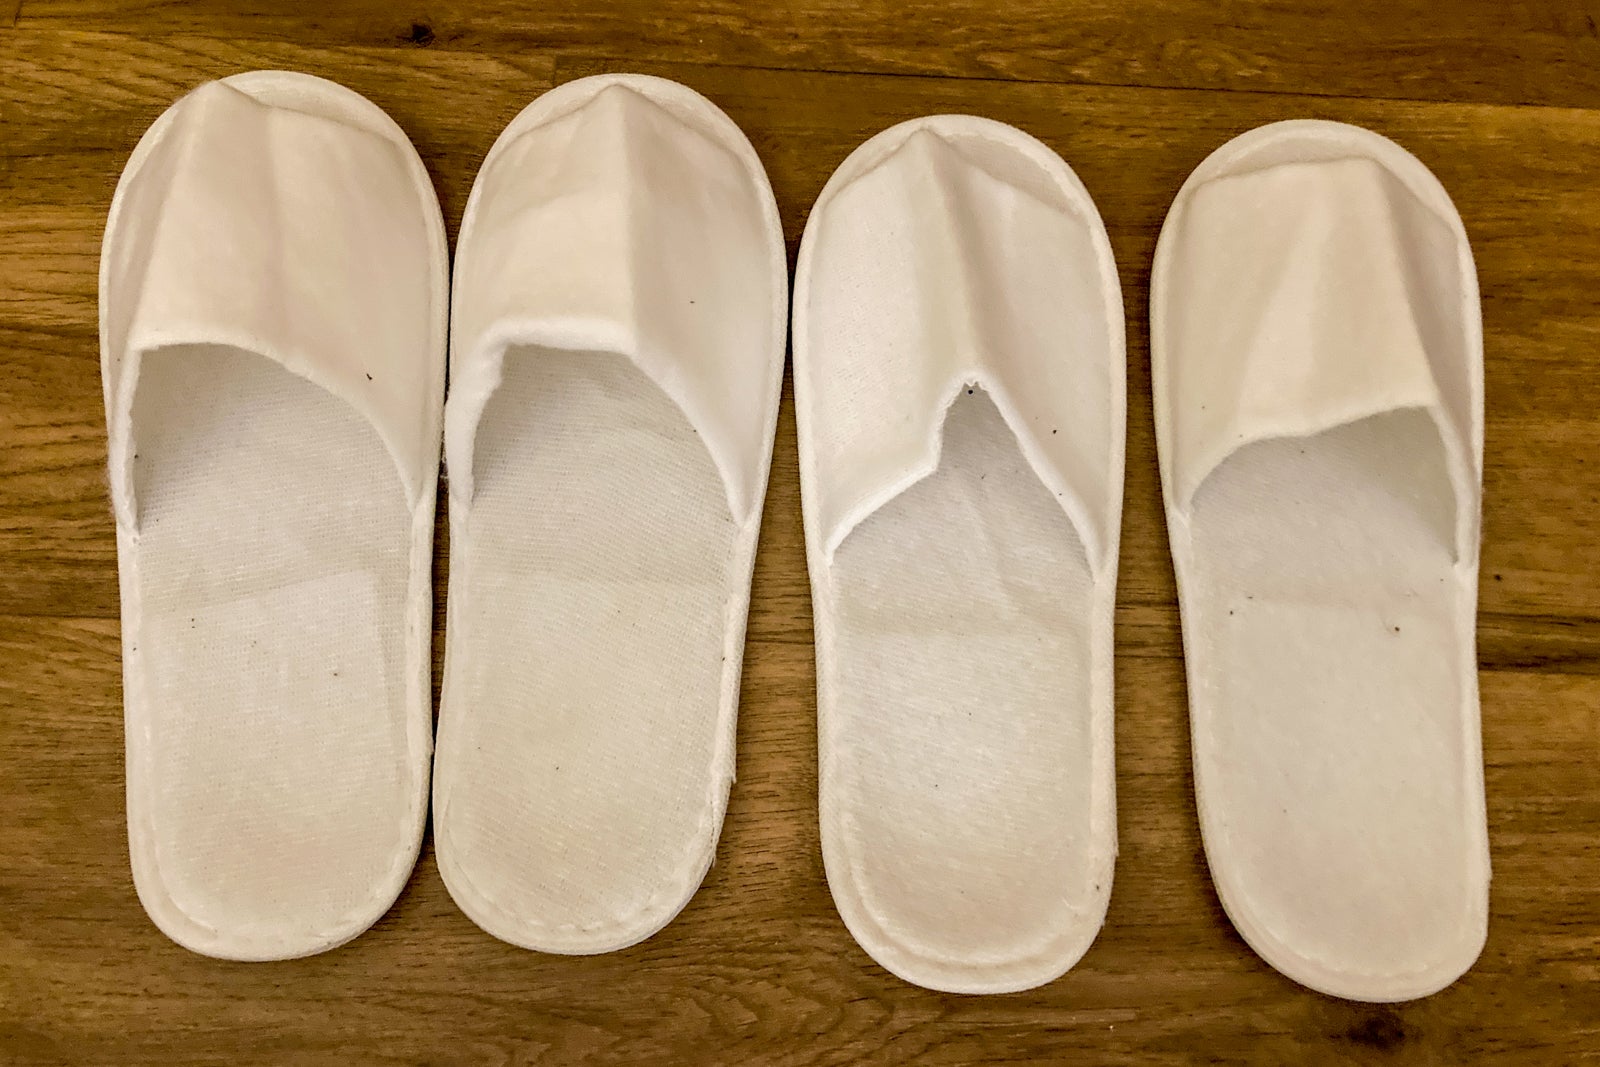 4 white fluffy slippers